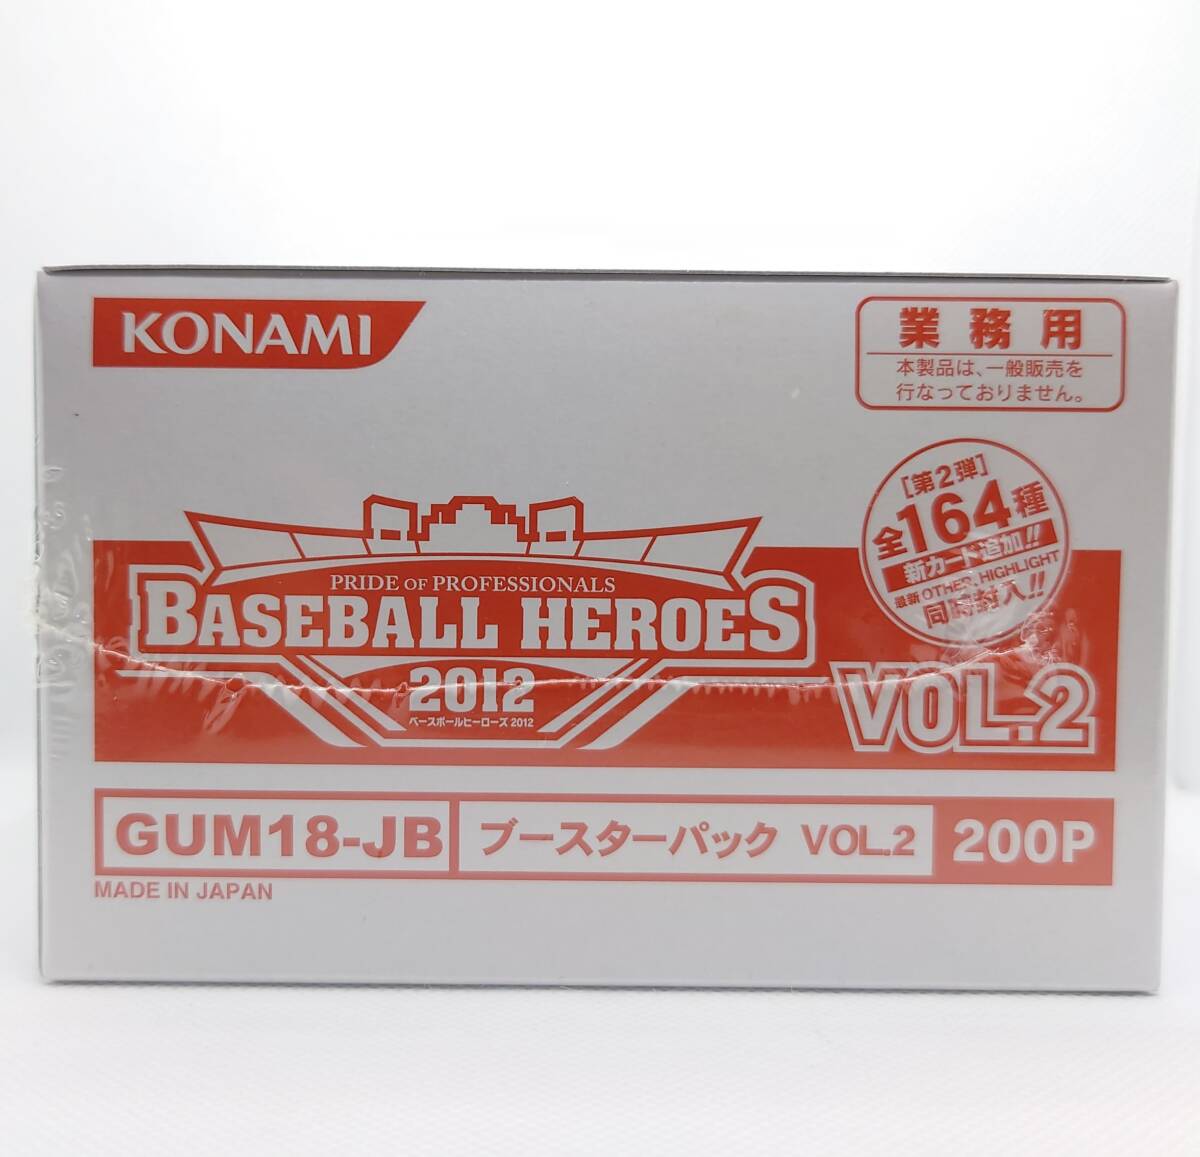 [KONAMI] Konami BBH2012 Baseball heroes 2012 бустер упаковка VOL.2 shrink есть новый товар нераспечатанный 200 листов ввод 1 коробка 